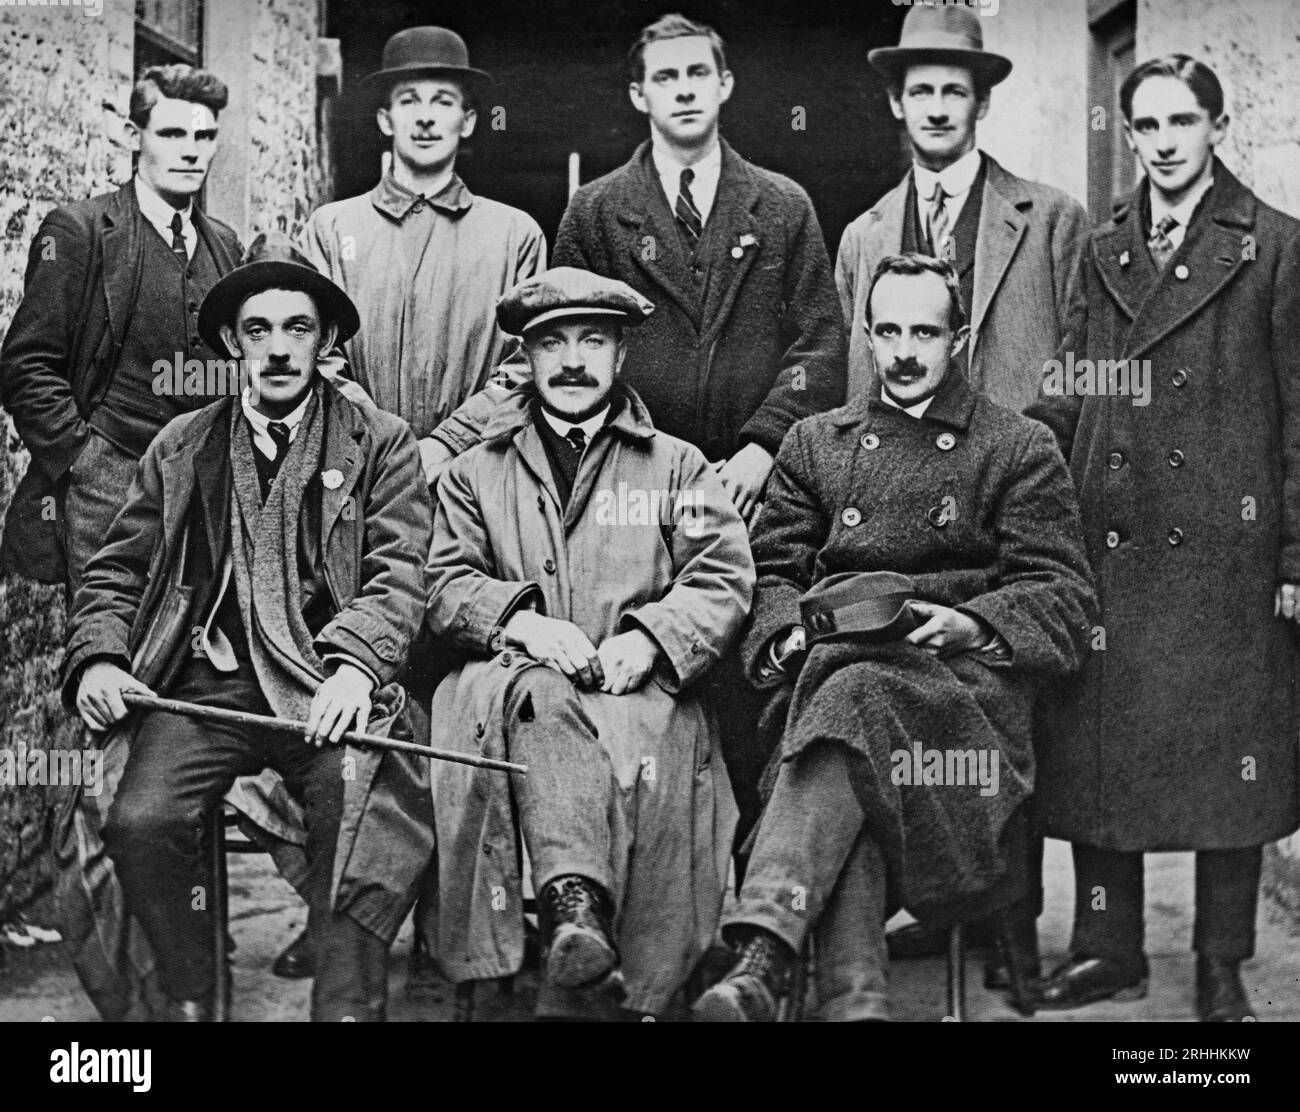 Ein Foto des frühen 20. Jahrhunderts von Cork Sinn Féin-Delegierten, die 1919 in Dublin verhandelten. Dazu gehörten Tomás Mac Curtain, der später von der Royal Irish Constabulary in seinem Haus erschossen wurde, und Terence McSwiney, der während eines Hungerstreiks im Brixton Prison, England, starb. Stockfoto